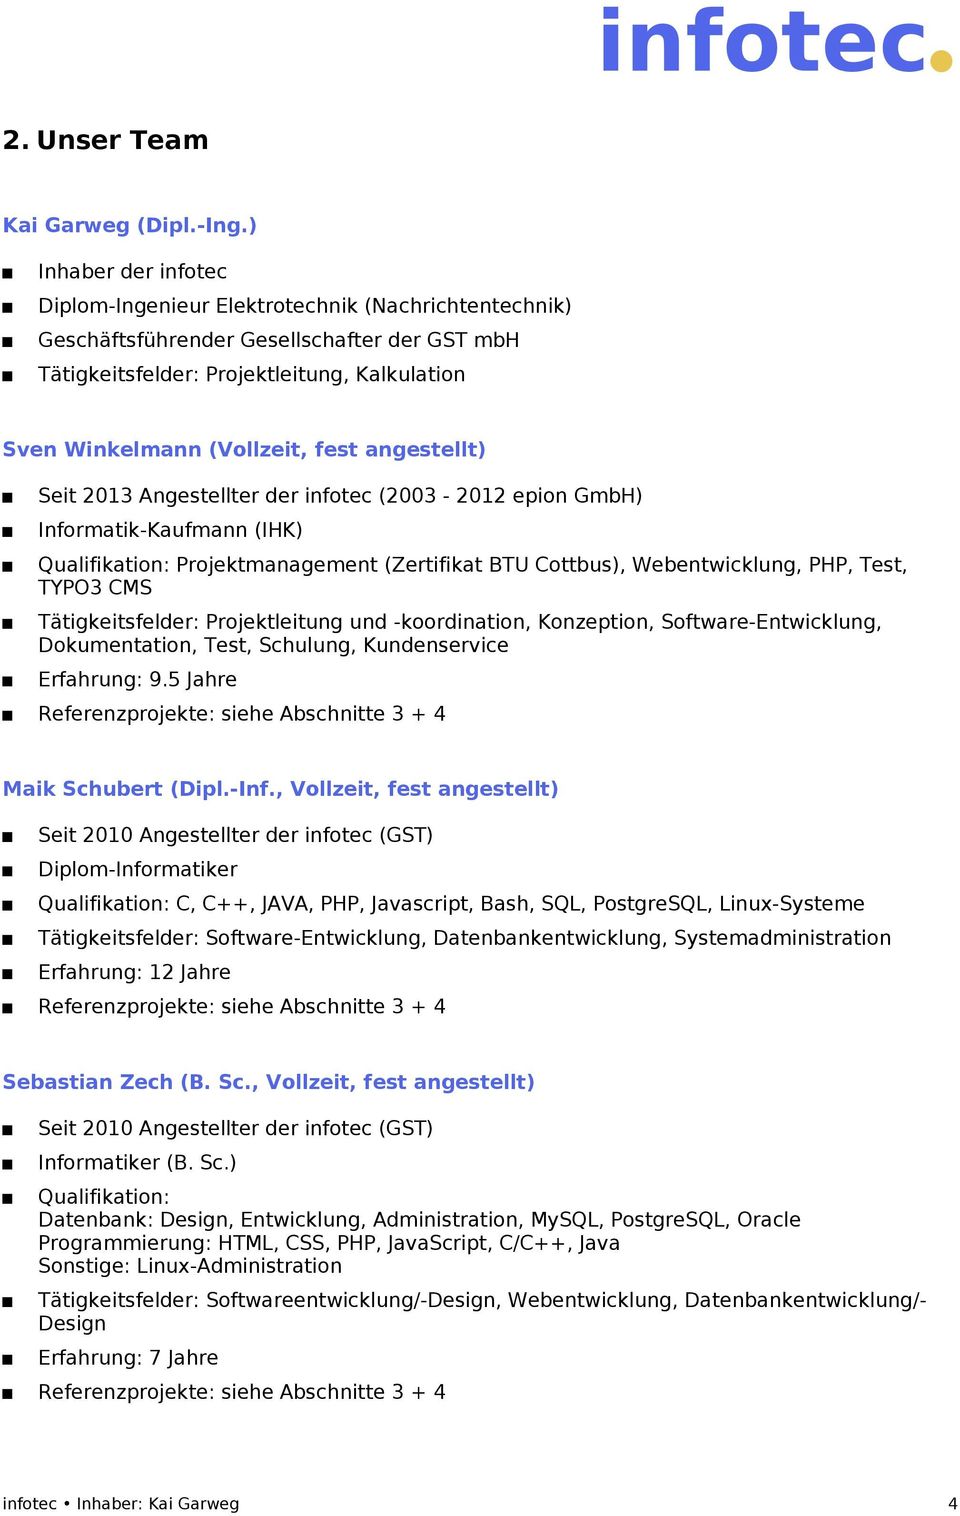 angestellt) Seit 2013 Angestellter der infotec (2003-2012 epion GmbH) Informatik-Kaufmann (IHK) Qualifikation: Projektmanagement (Zertifikat BTU Cottbus), Webentwicklung, PHP, Test, TYPO3 CMS